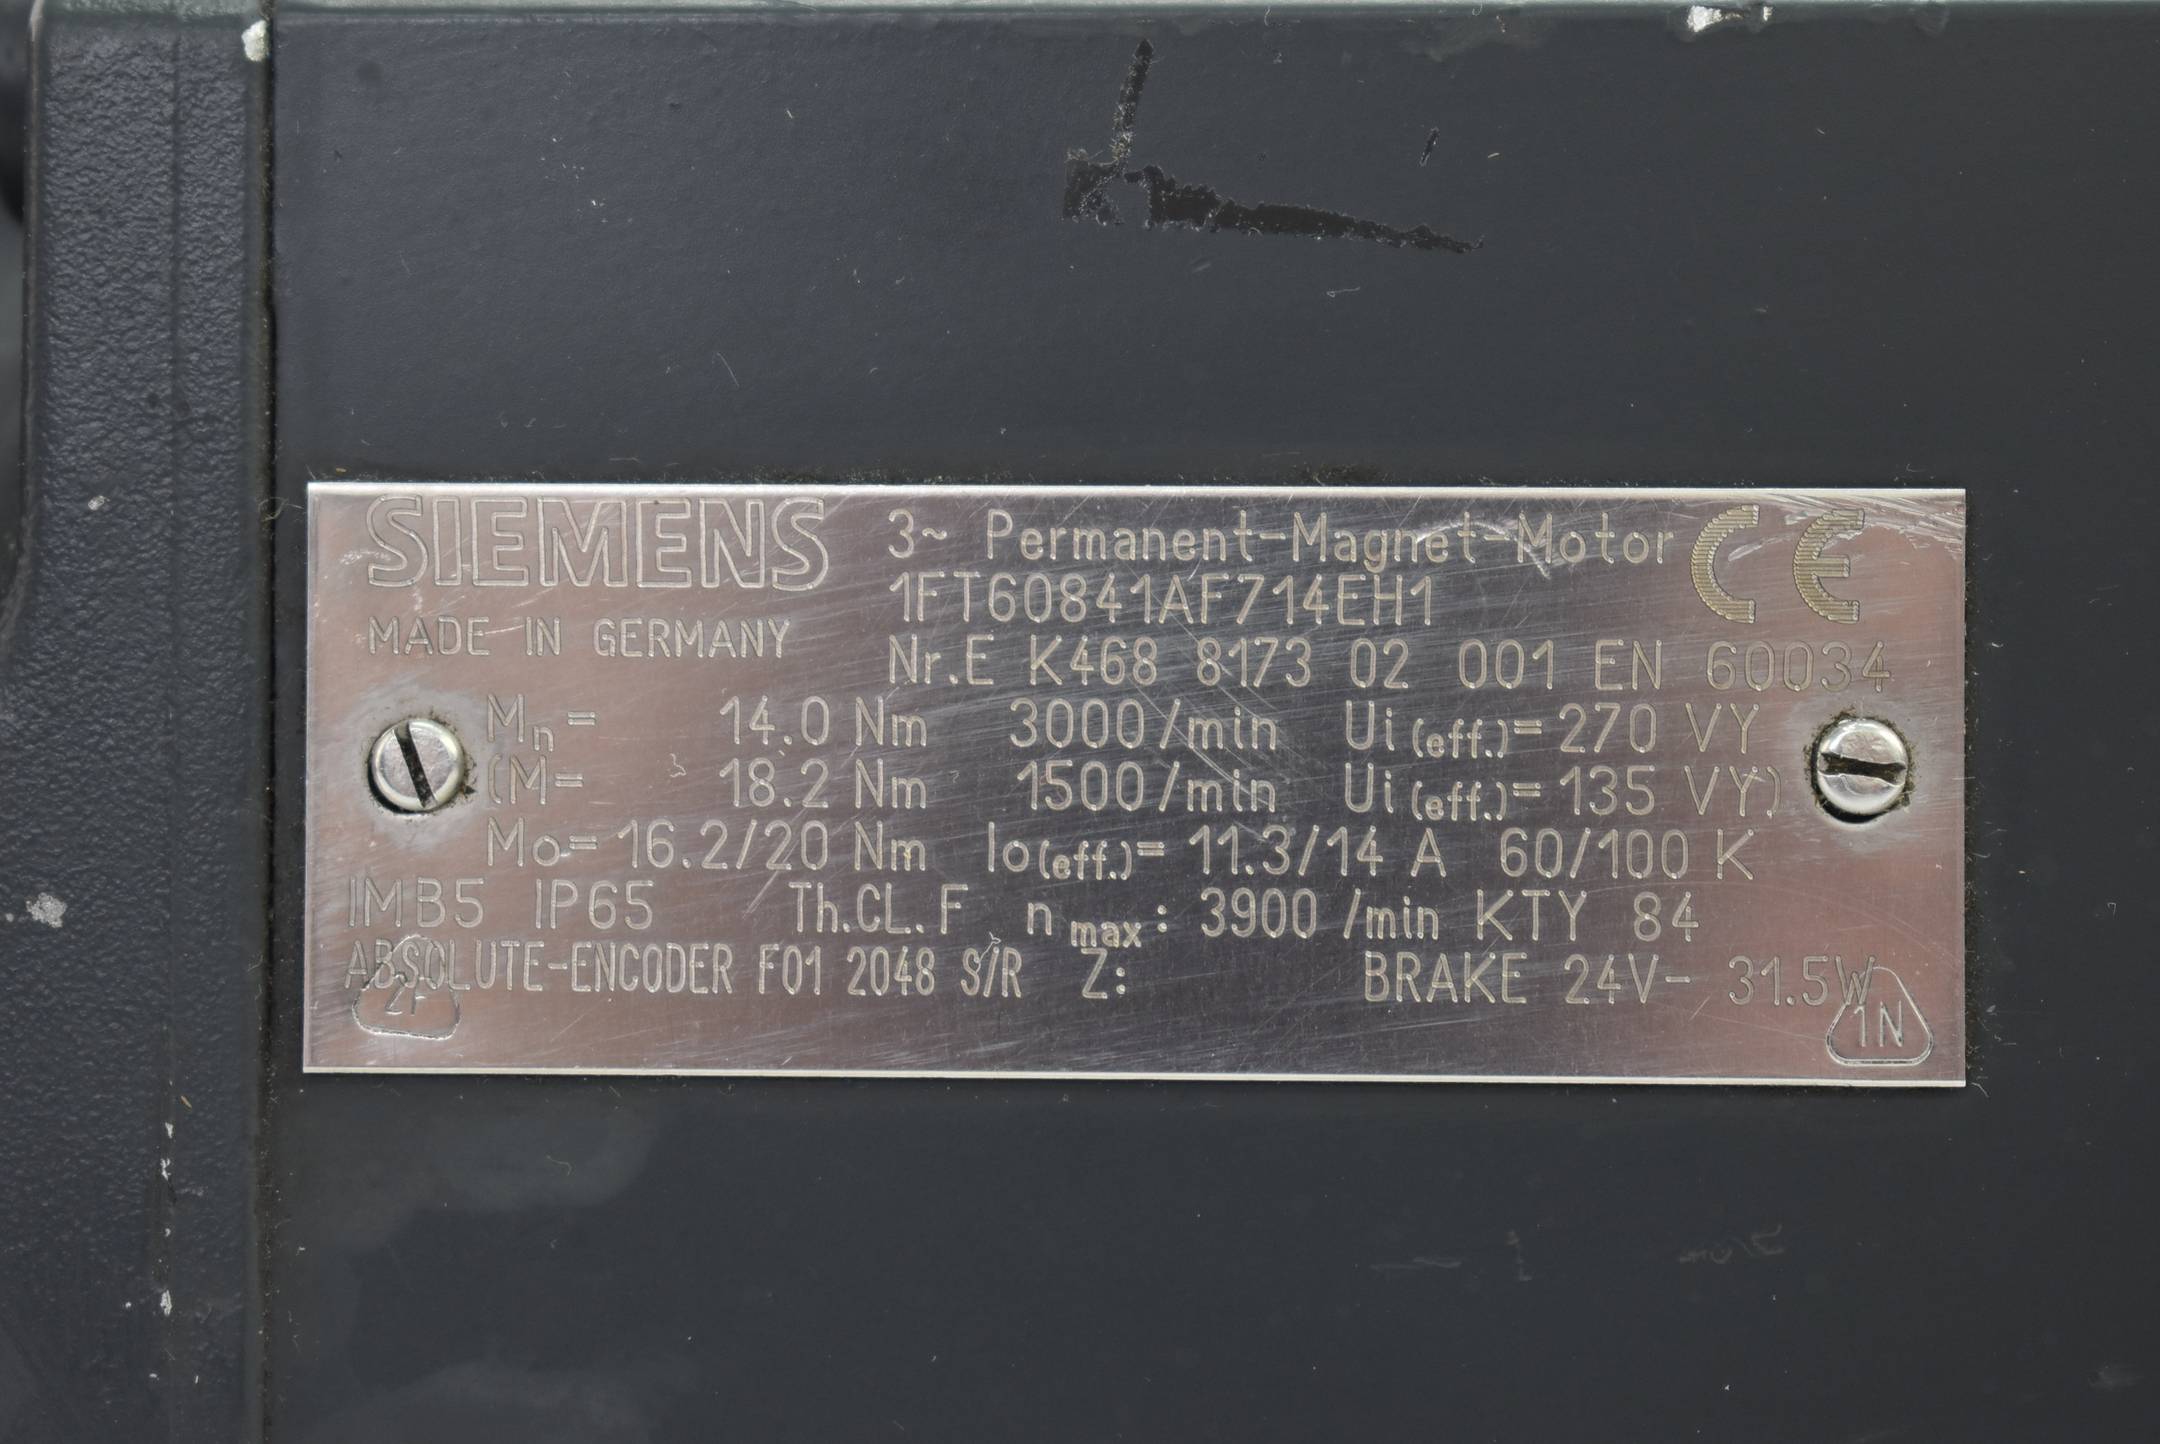 Siemens 3~ Permanent-Magnet-Motor 1FT6084-1AF71-4EH1 ( 1FT60841AF714EH1 )